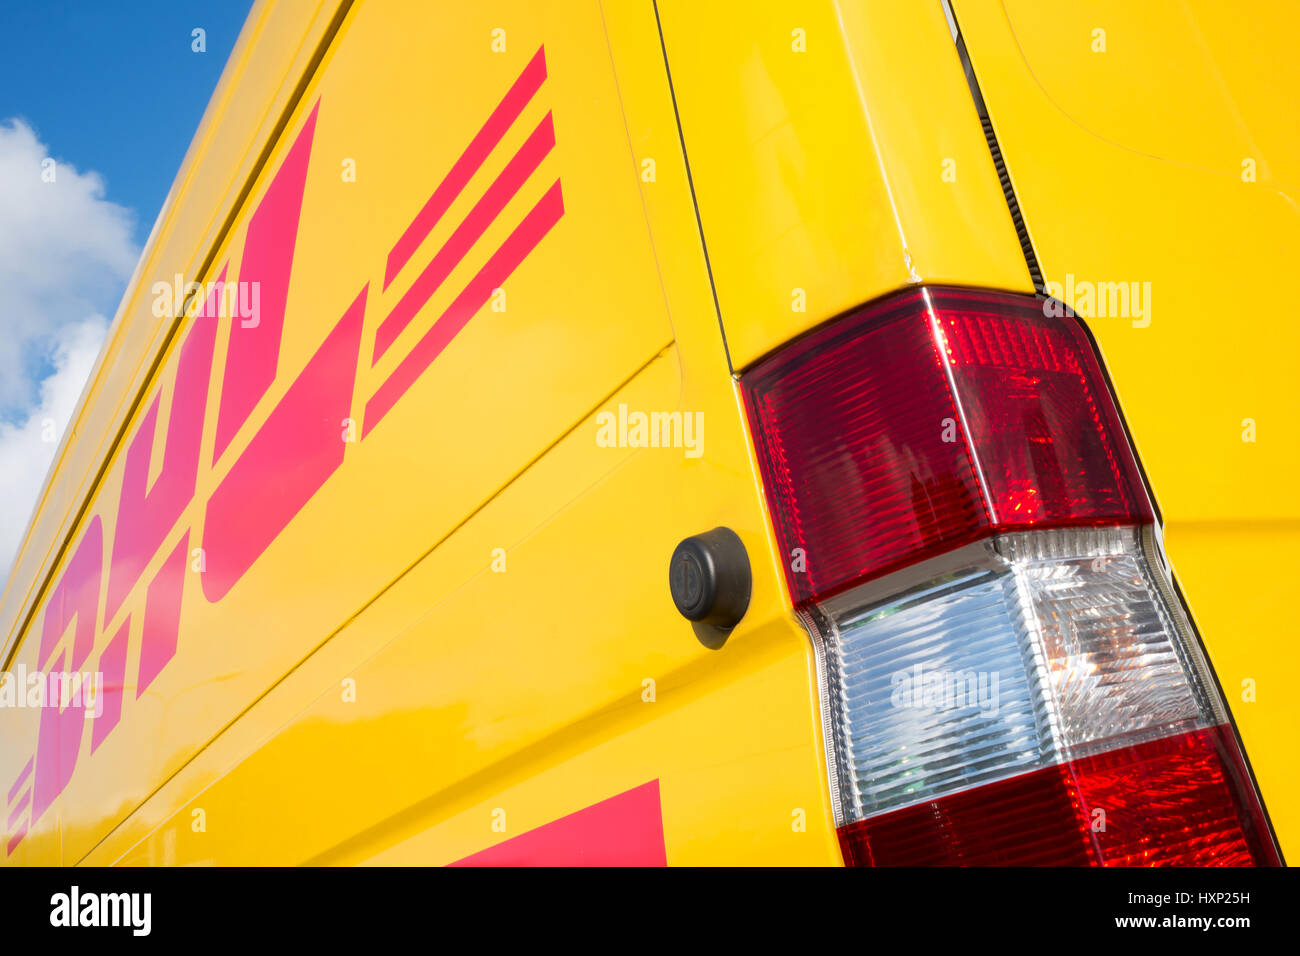 Panel lateral de una camioneta de entrega de DHL. DHL es una división de la compañía de logística alemana Deutsche Post AG proporcionando servicios de correo expreso internacional. Foto de stock